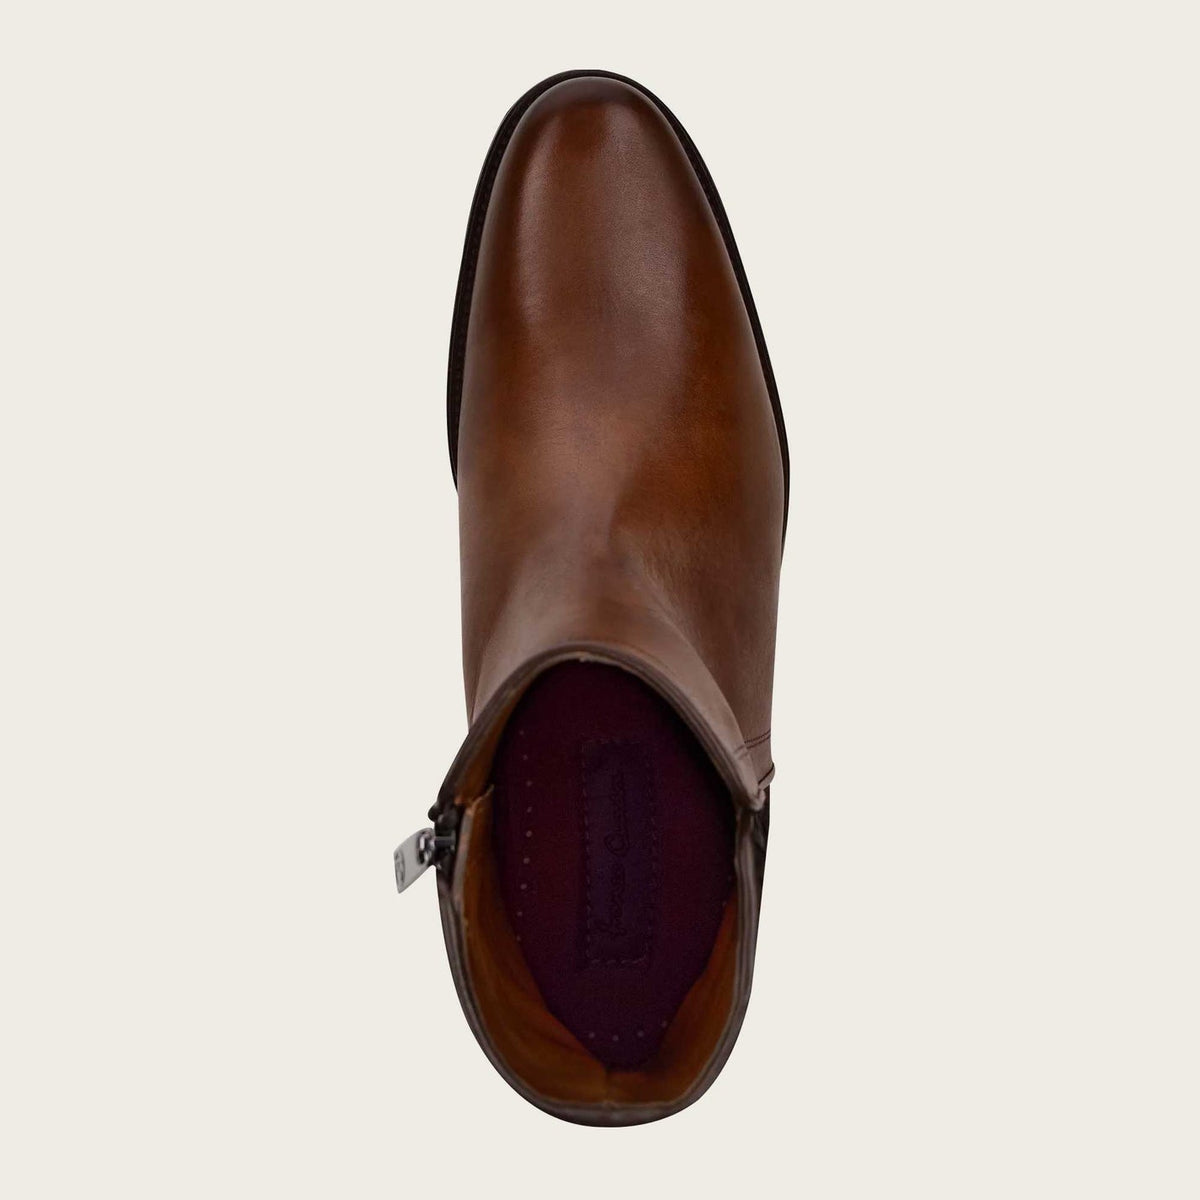 Cuadra Men's Honey Handwoven Leather Ankle Boots - Dudes Boutique